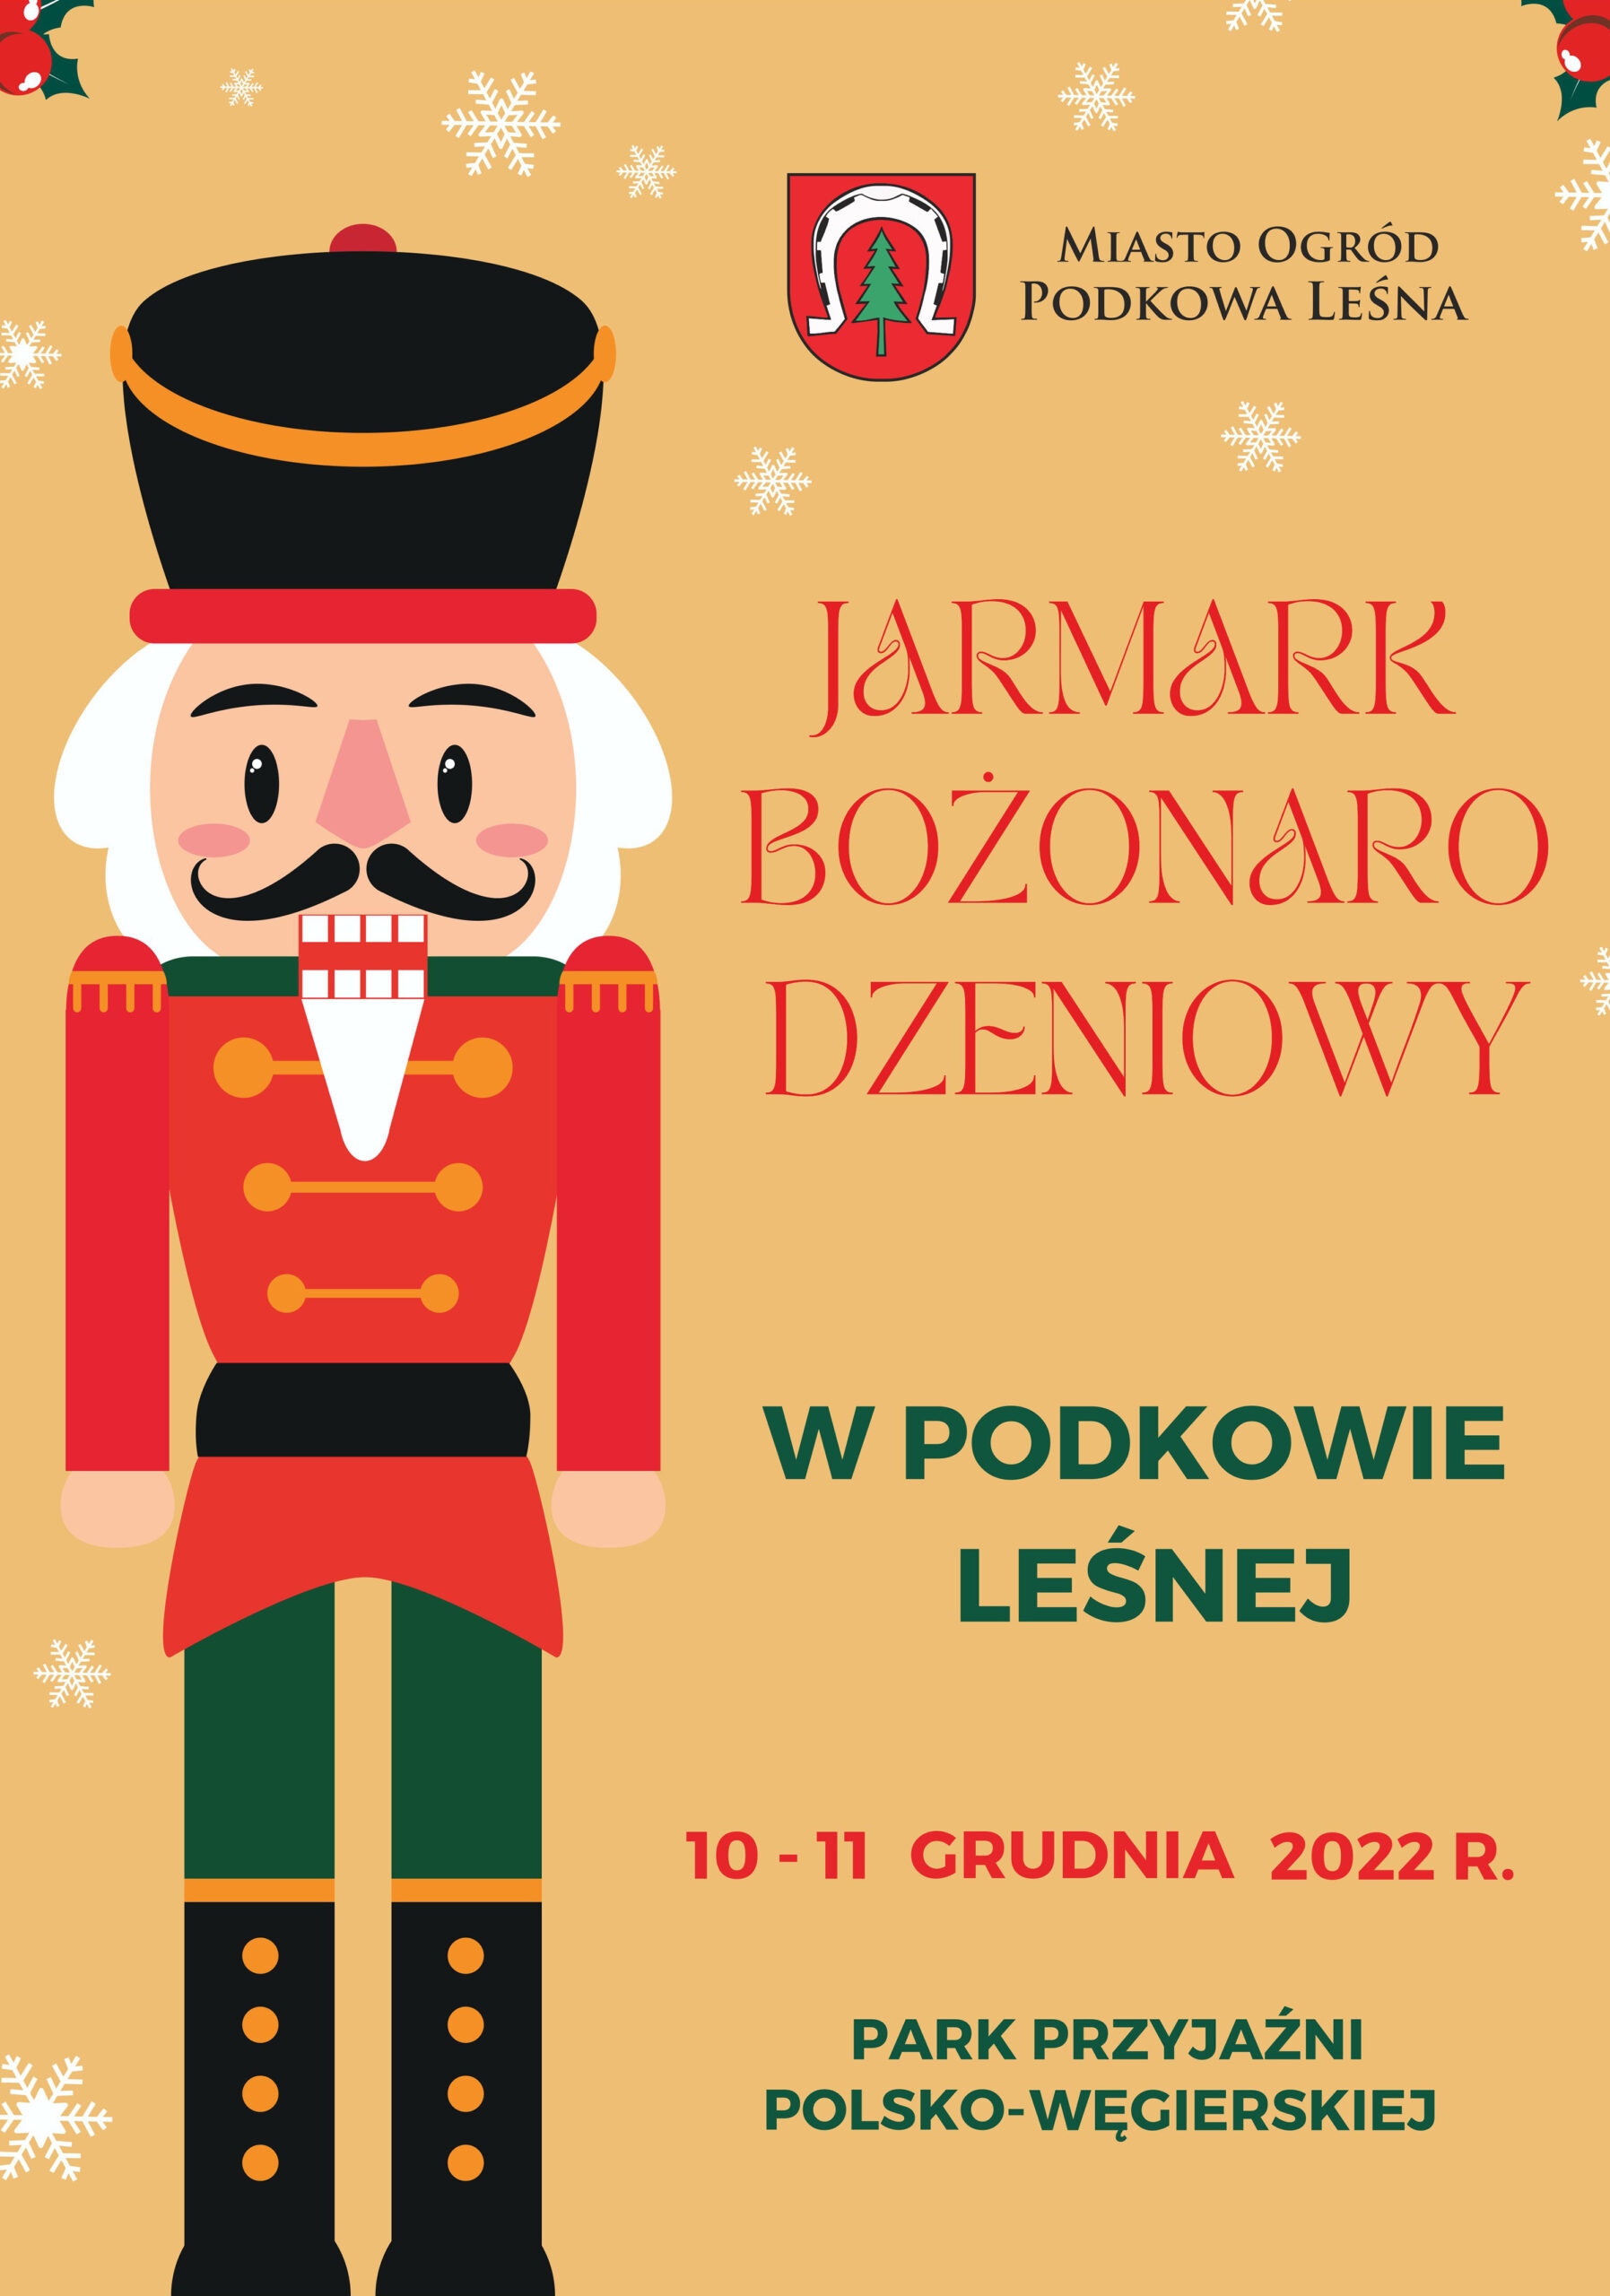 You are currently viewing Jarmark bożonarodzeniowy